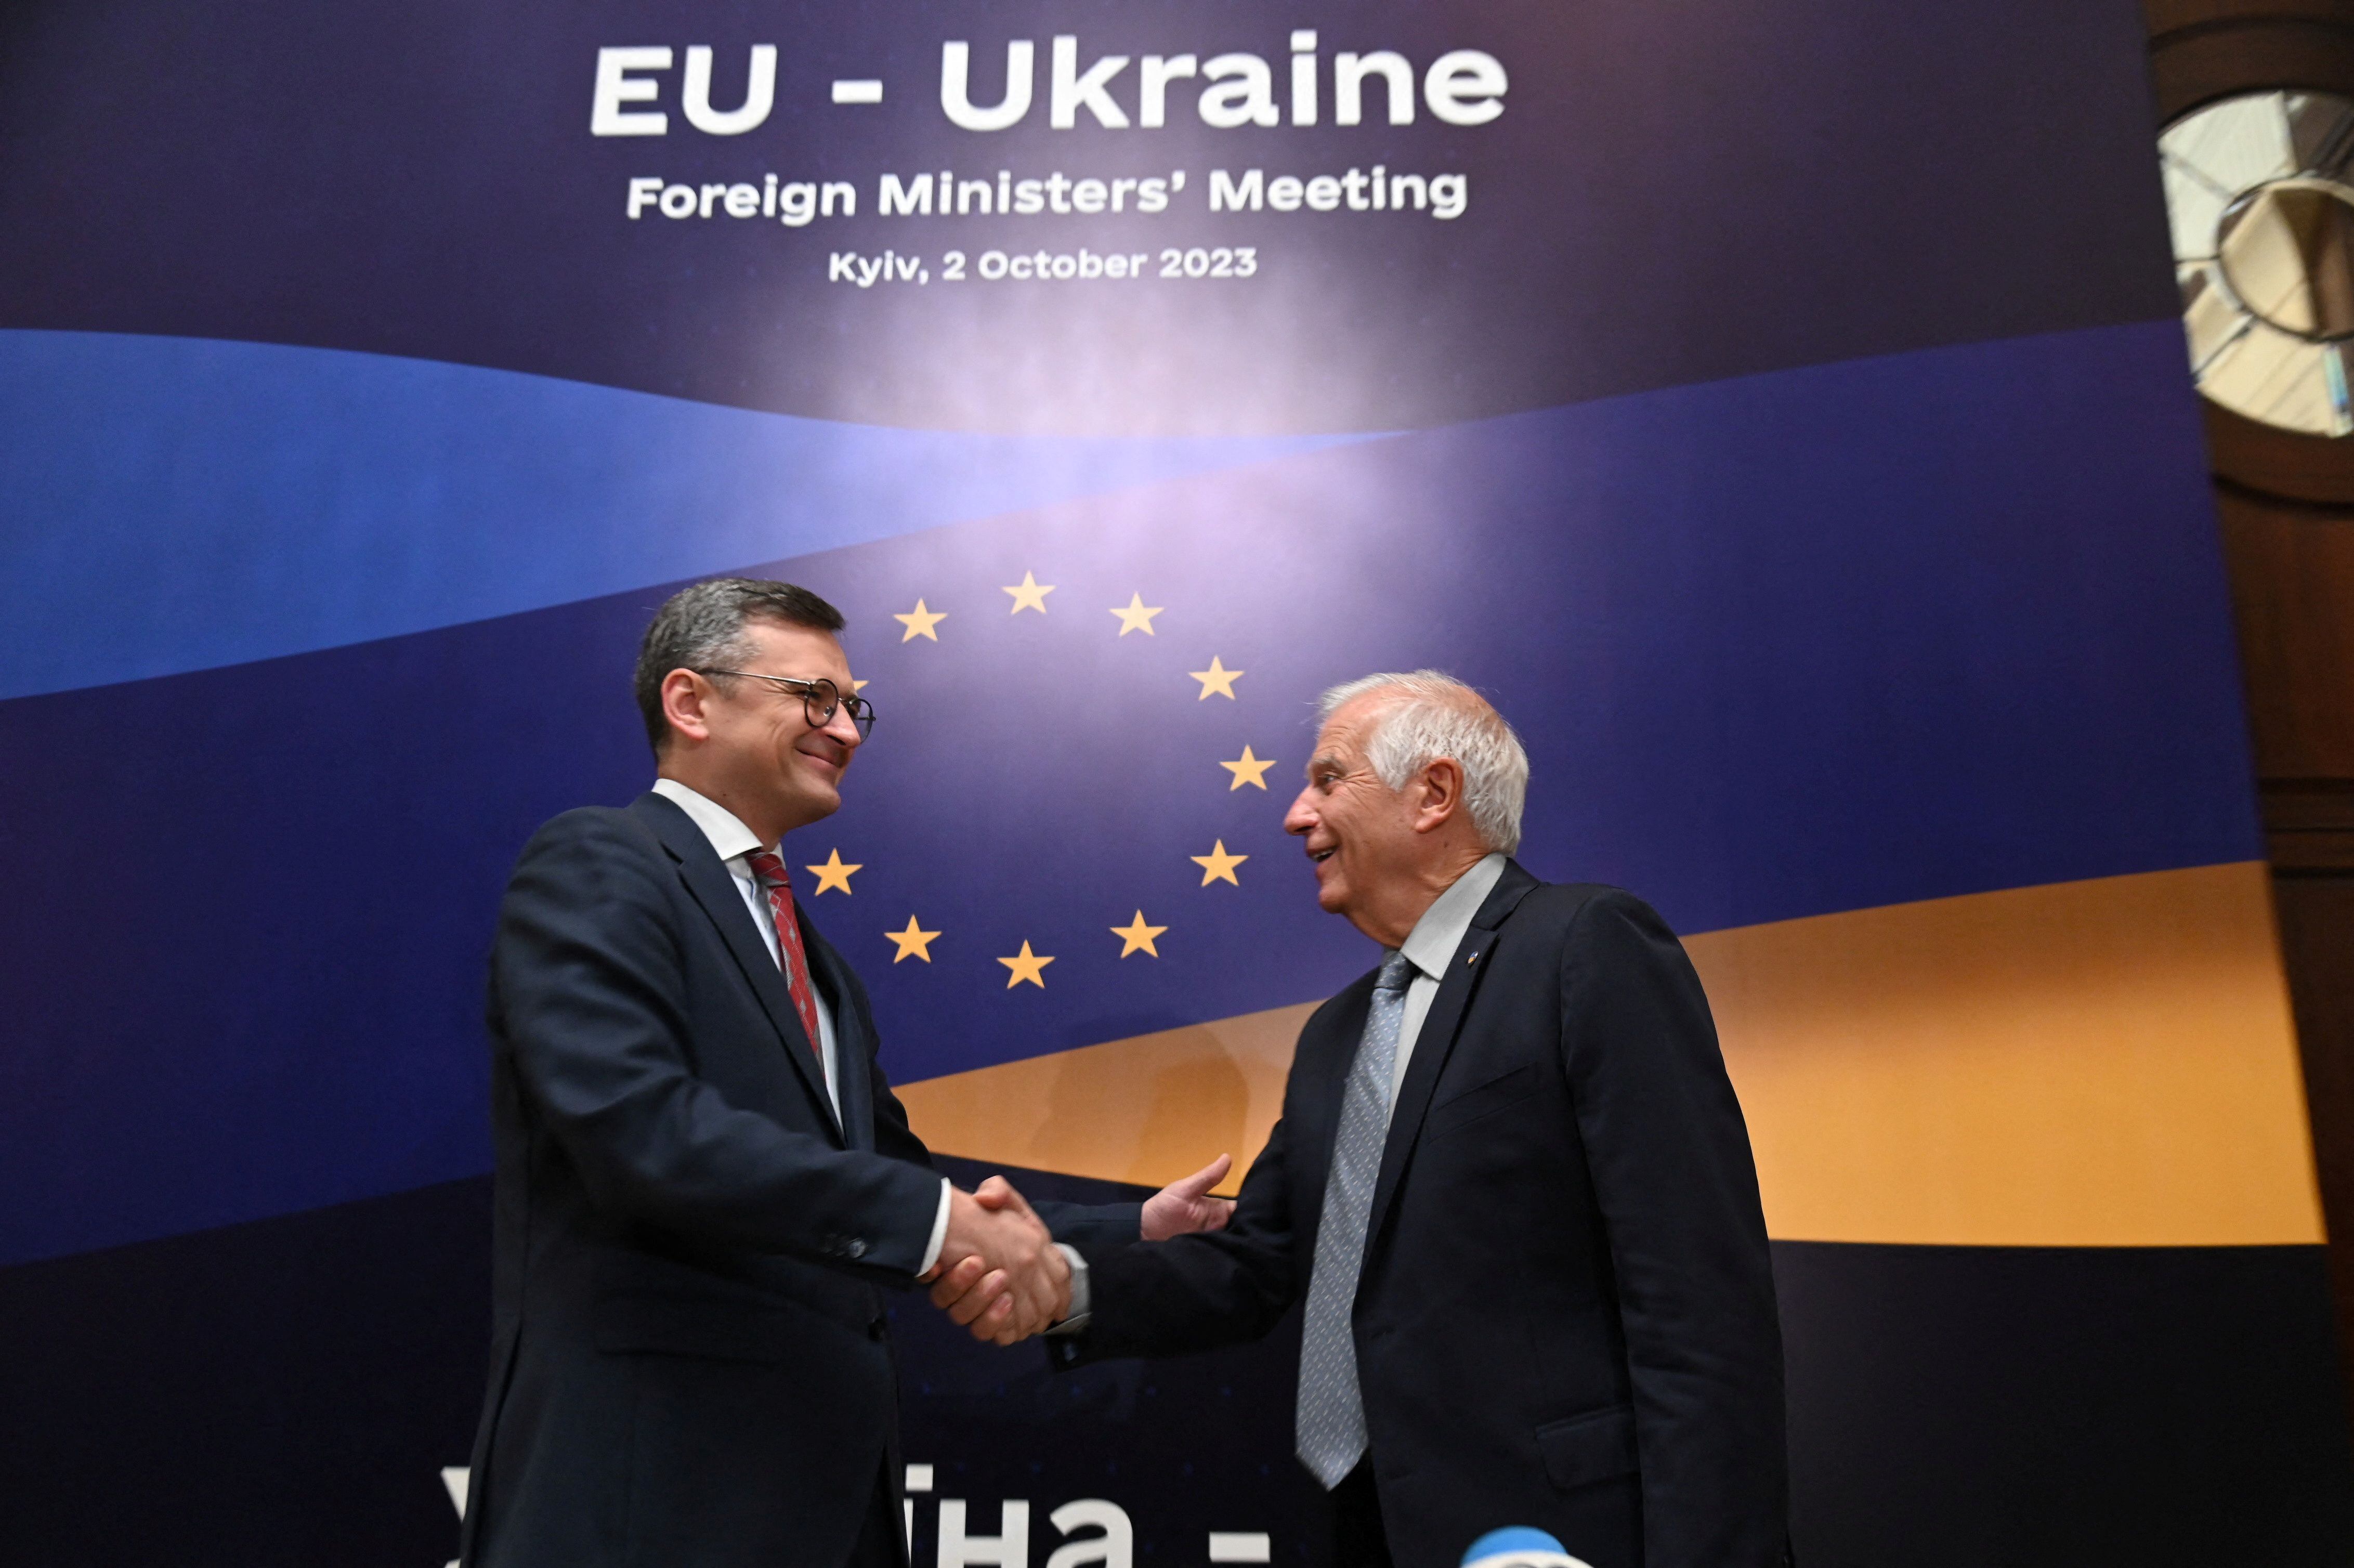 El ministro de Exteriores de Ucrania, Dmytro Kuleba, saluda al jefe de la diplomacia de la UE, Josep Borrell, en Kiev (Servicio de prensa del Ministerio de Exteriores de Ucrania/via REUTERS)